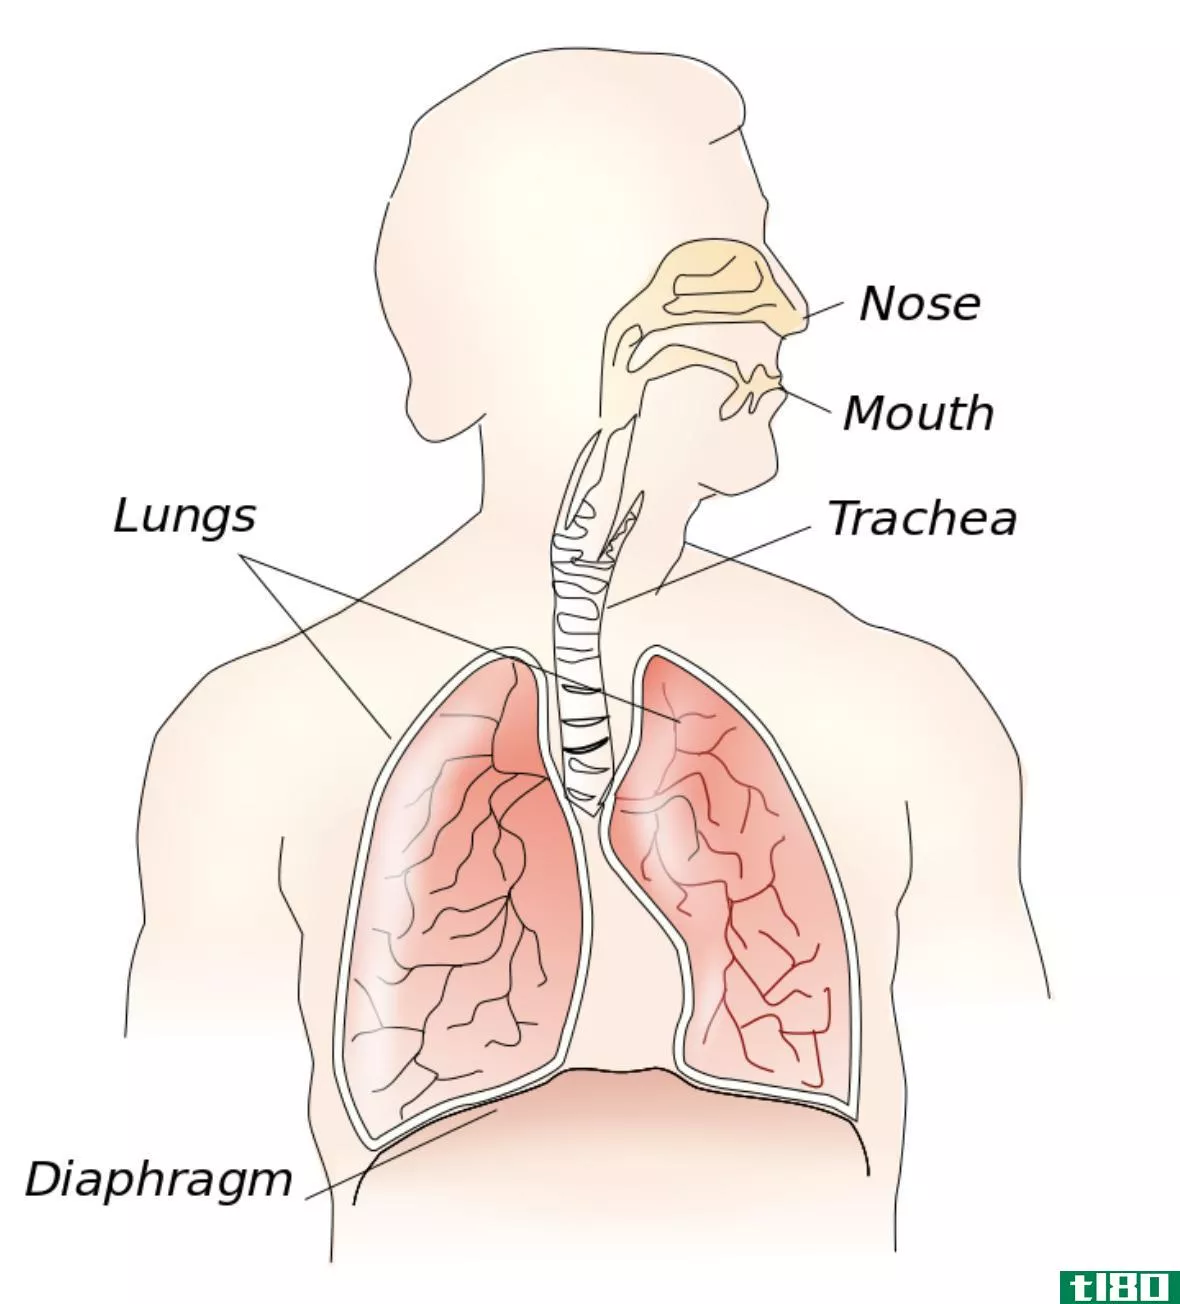 外部呼吸(external respiration)和内呼吸(internal respiration)的区别